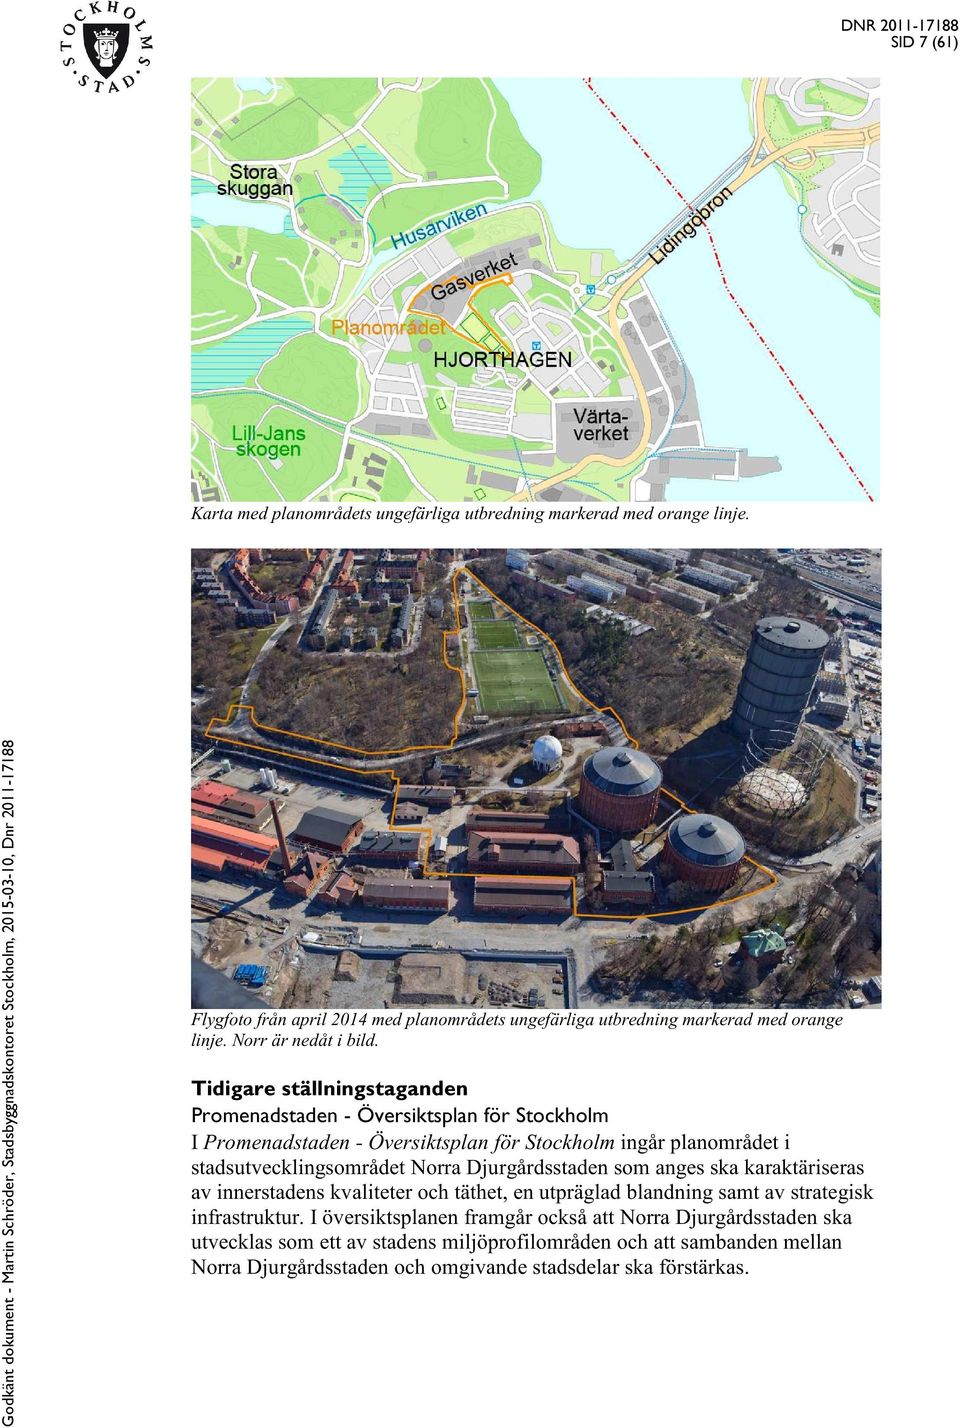 Tidigare ställningstaganden Promenadstaden - Översiktsplan för Stockholm I Promenadstaden - Översiktsplan för Stockholm ingår planområdet i stadsutvecklingsområdet Norra